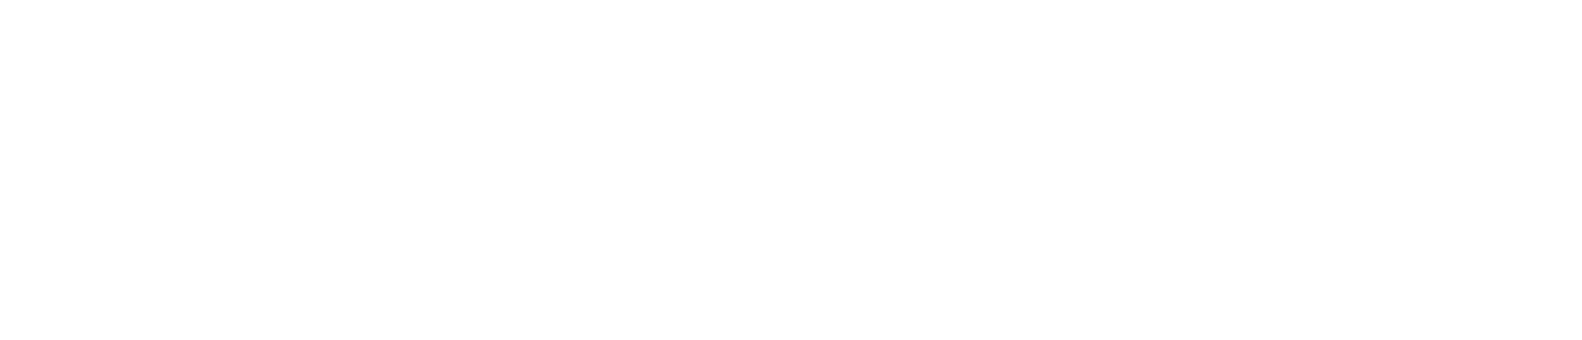 HBM Healthcare Investments logo grand pour les fonds sombres (PNG transparent)